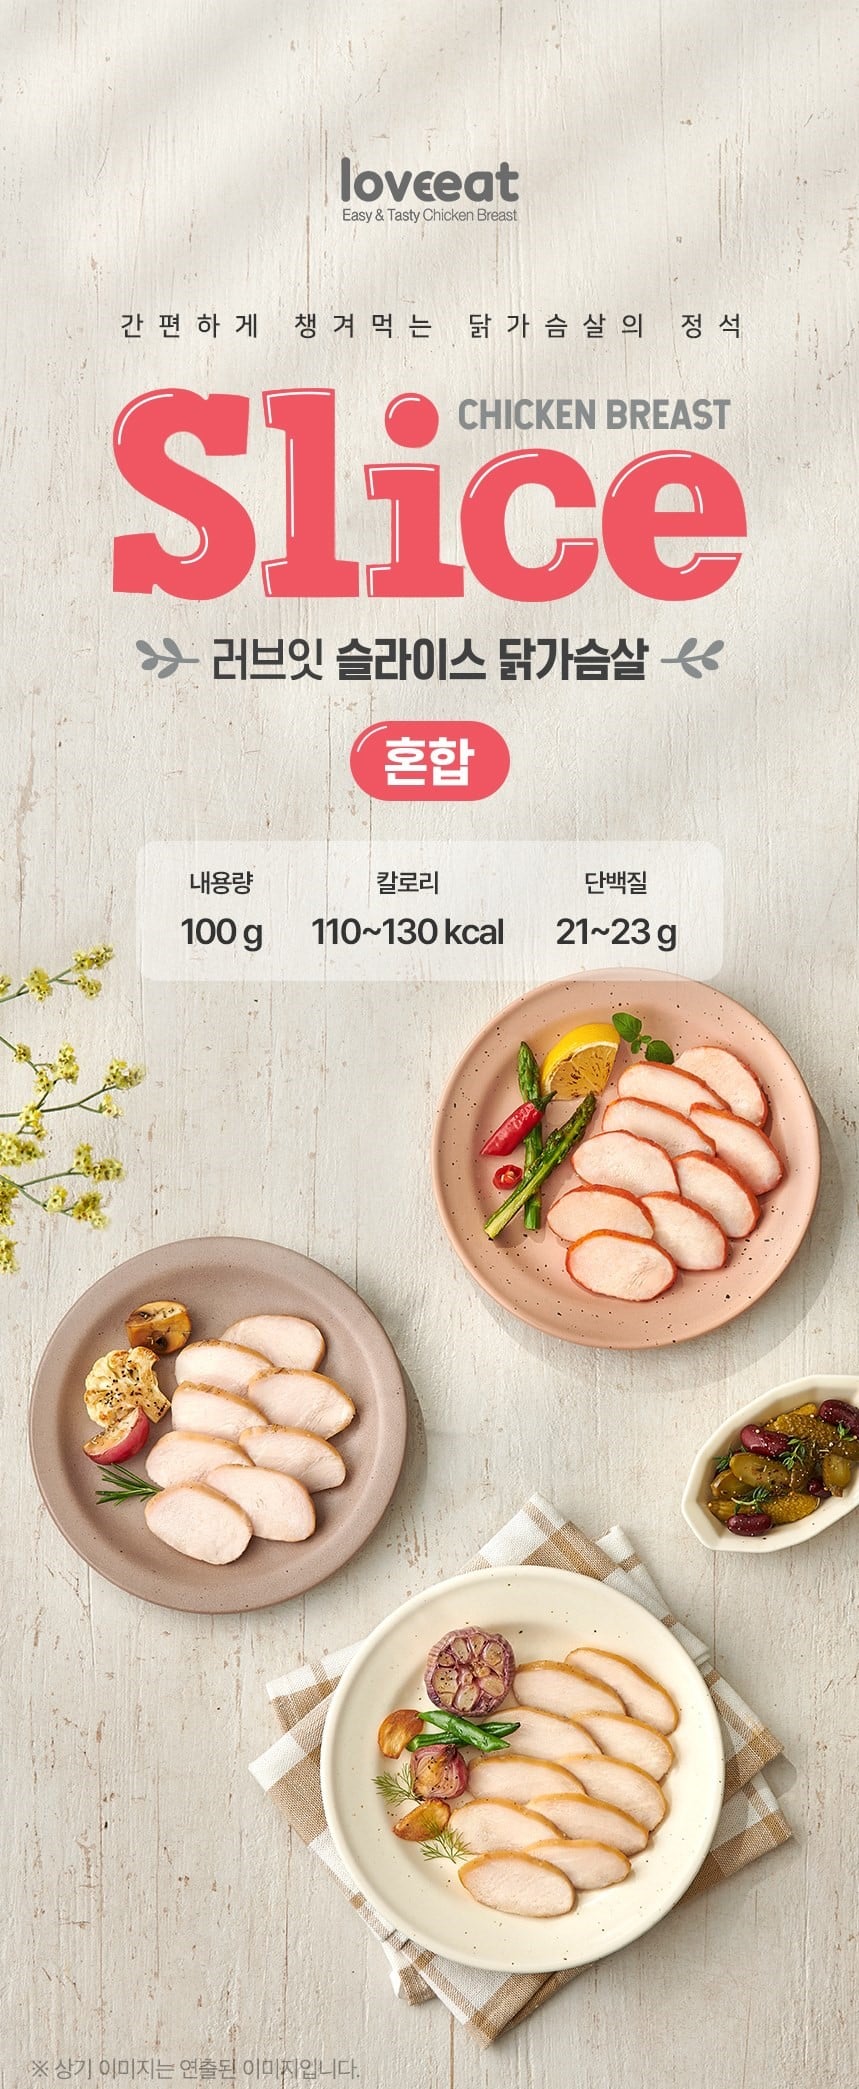 韓國食品-[Loveeat] Slice 免切雞胸片 [煙燻味] 100g